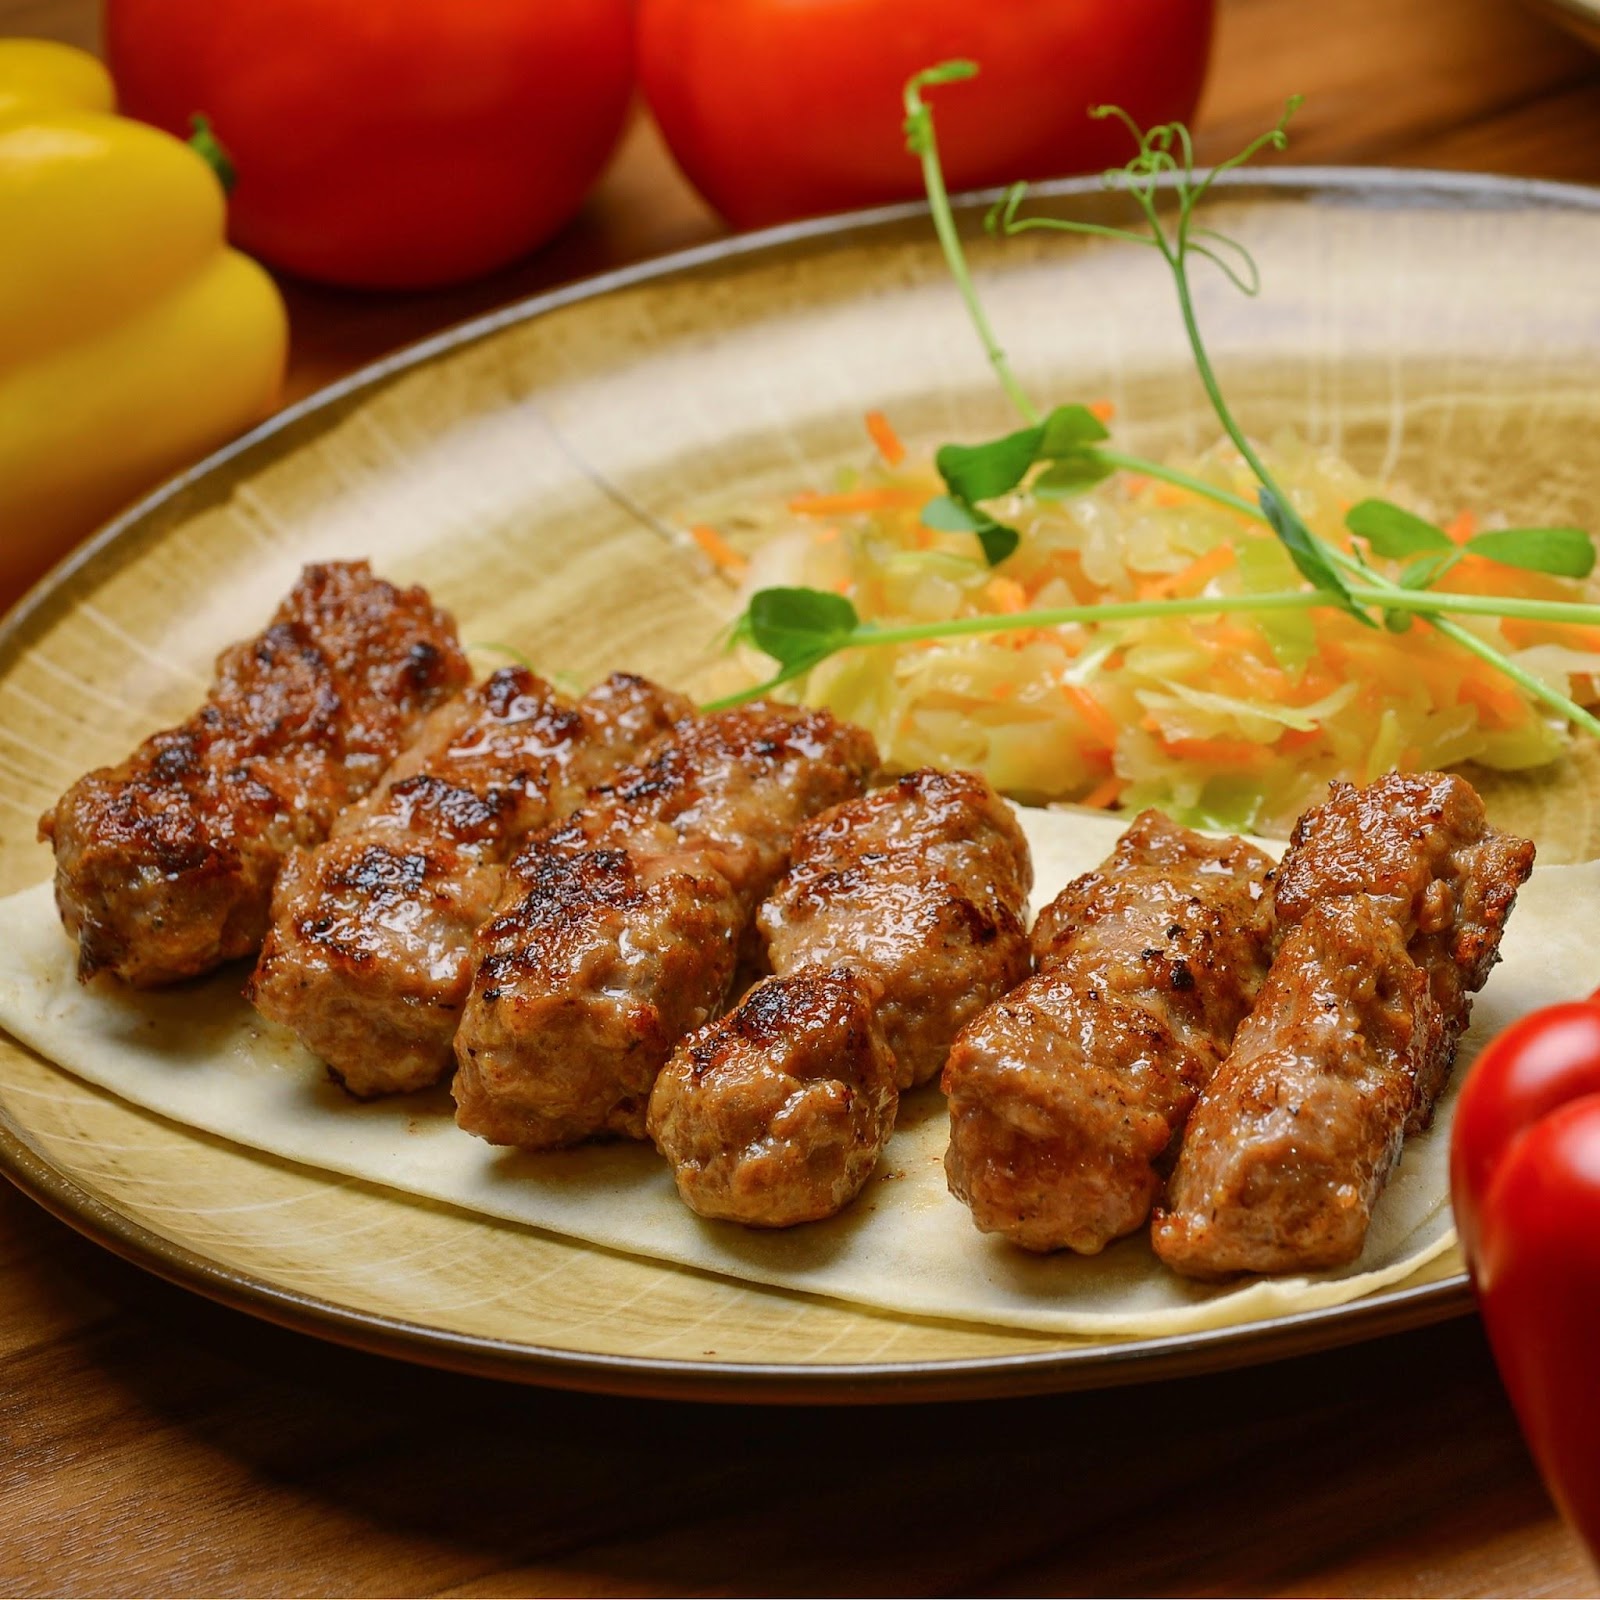 Балканские колбаски из мяса